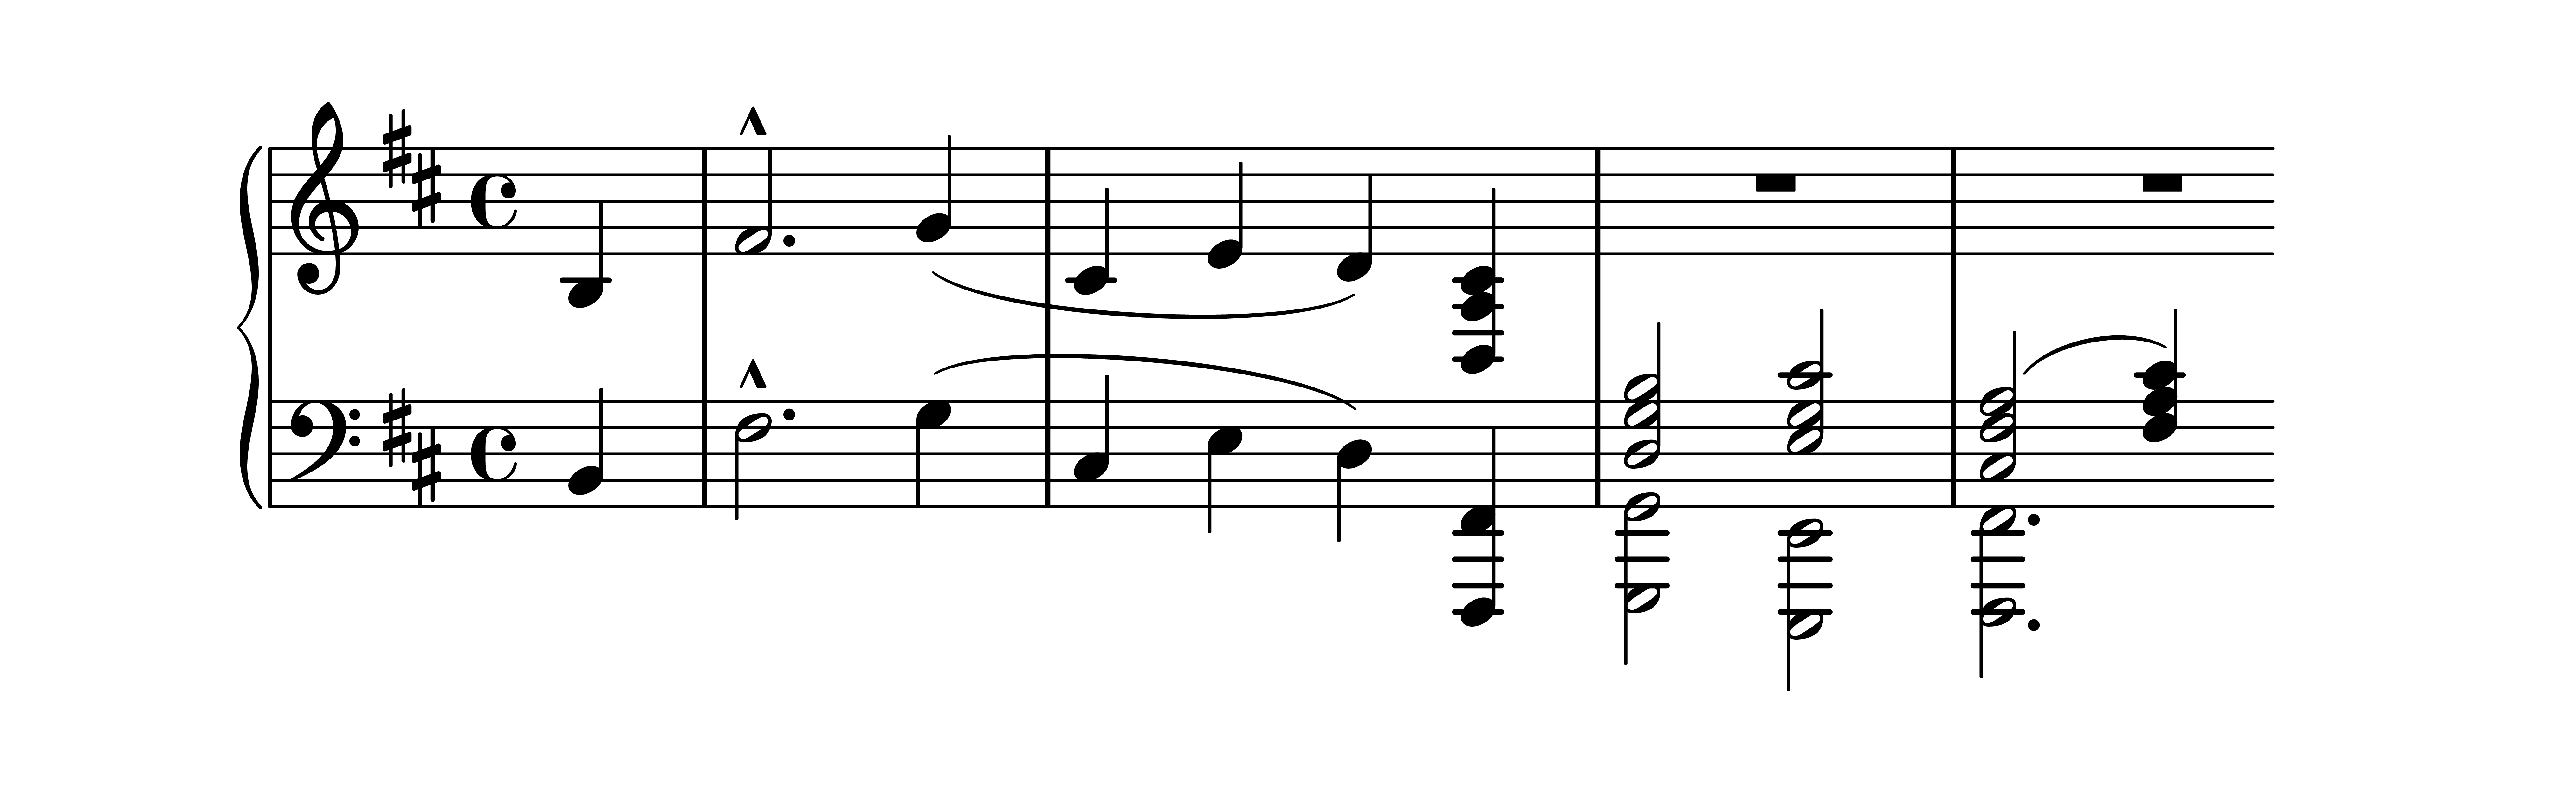 Es. 5: Robert Schumann, op. 133 n. 1, bb. 9-13